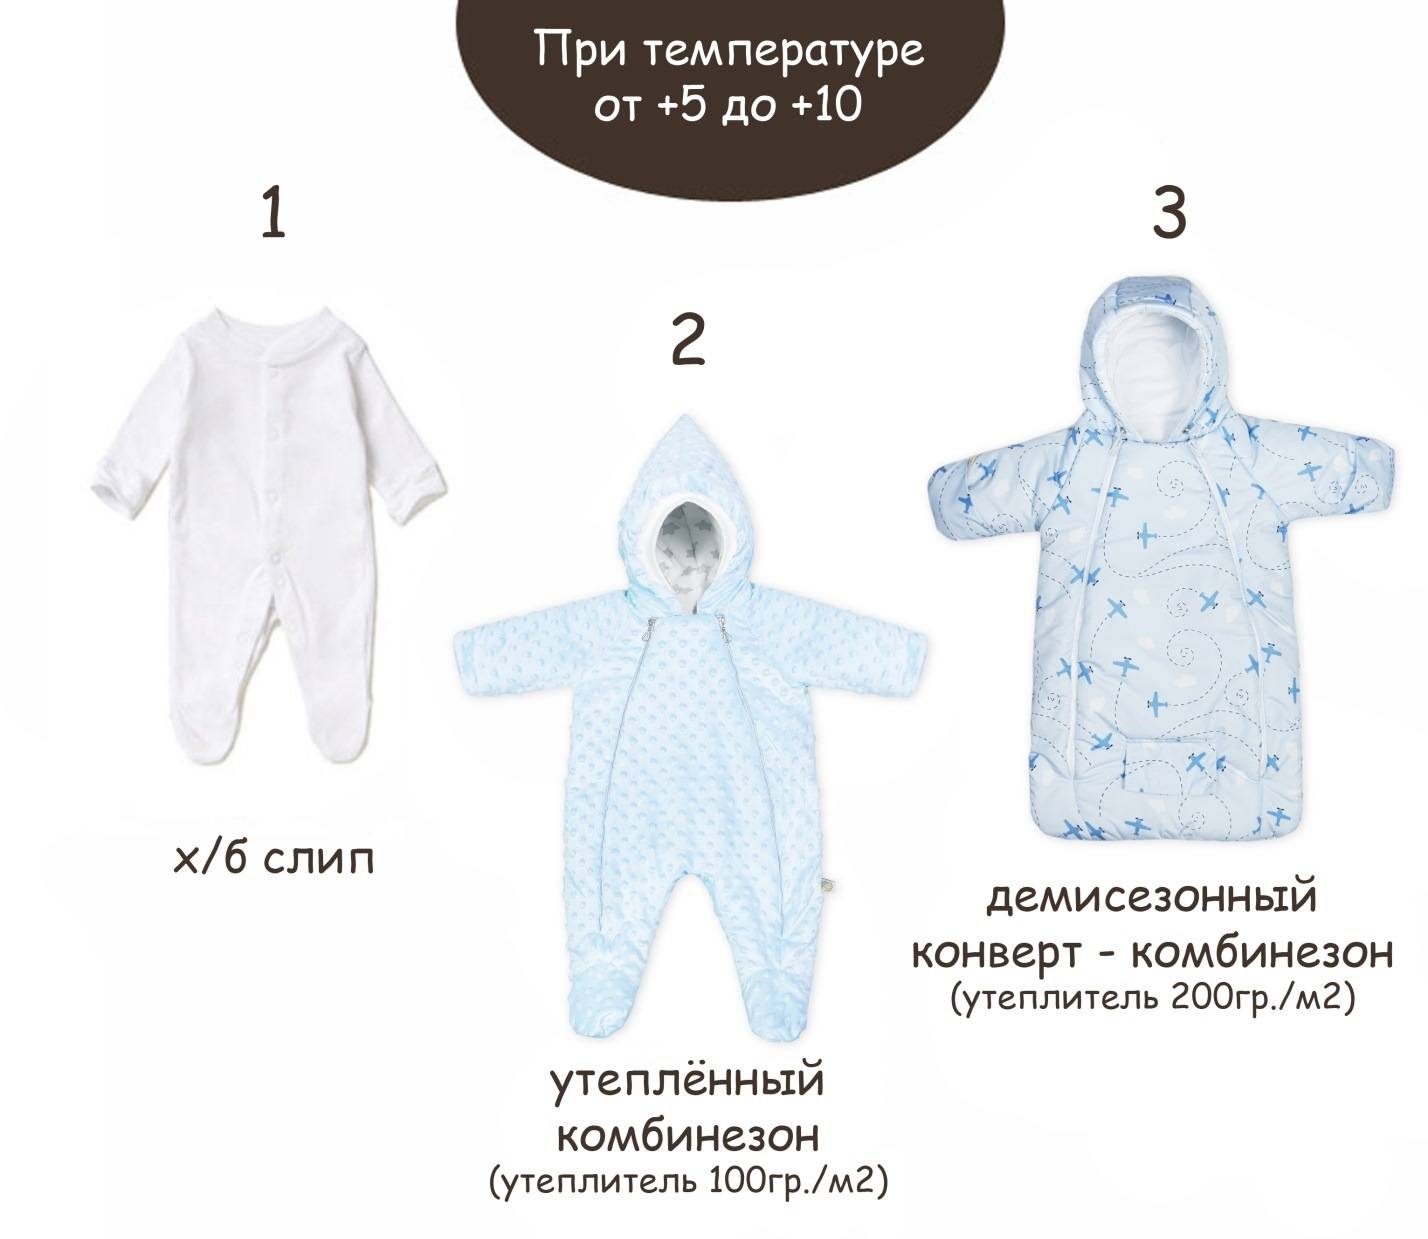 Как одевать новорожденного, особенности одежды грудничка во время прогулки летом